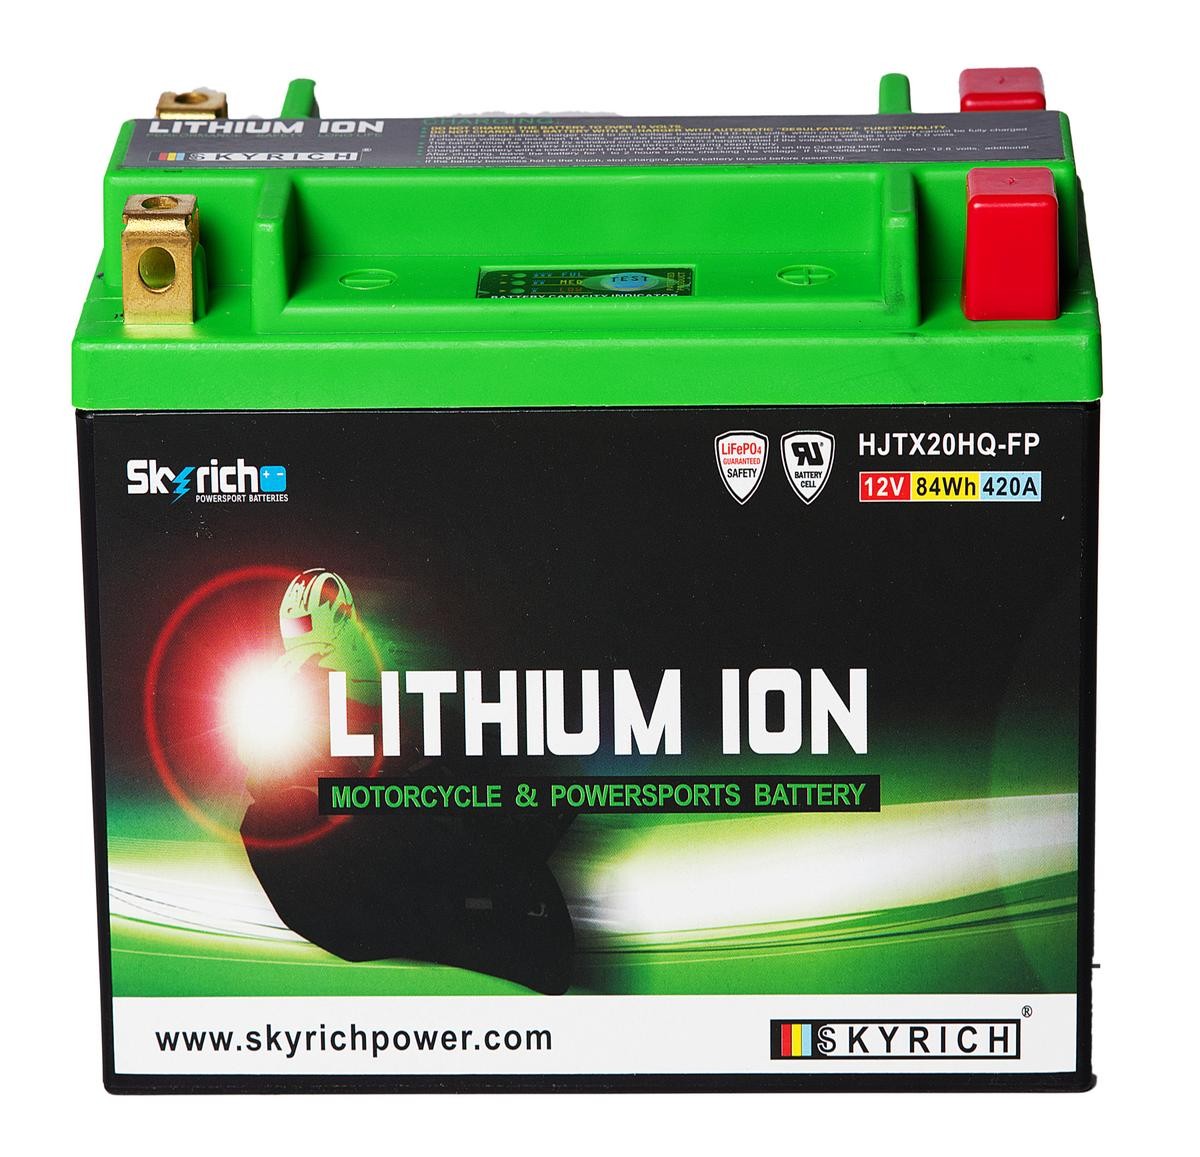 HARLEY-DAVIDSON BAD BOY Batterie 12V 7Ah 420A N Li-Ionen-Batterie SKYRICH LITHIUM ION HJTX20HQ-FP